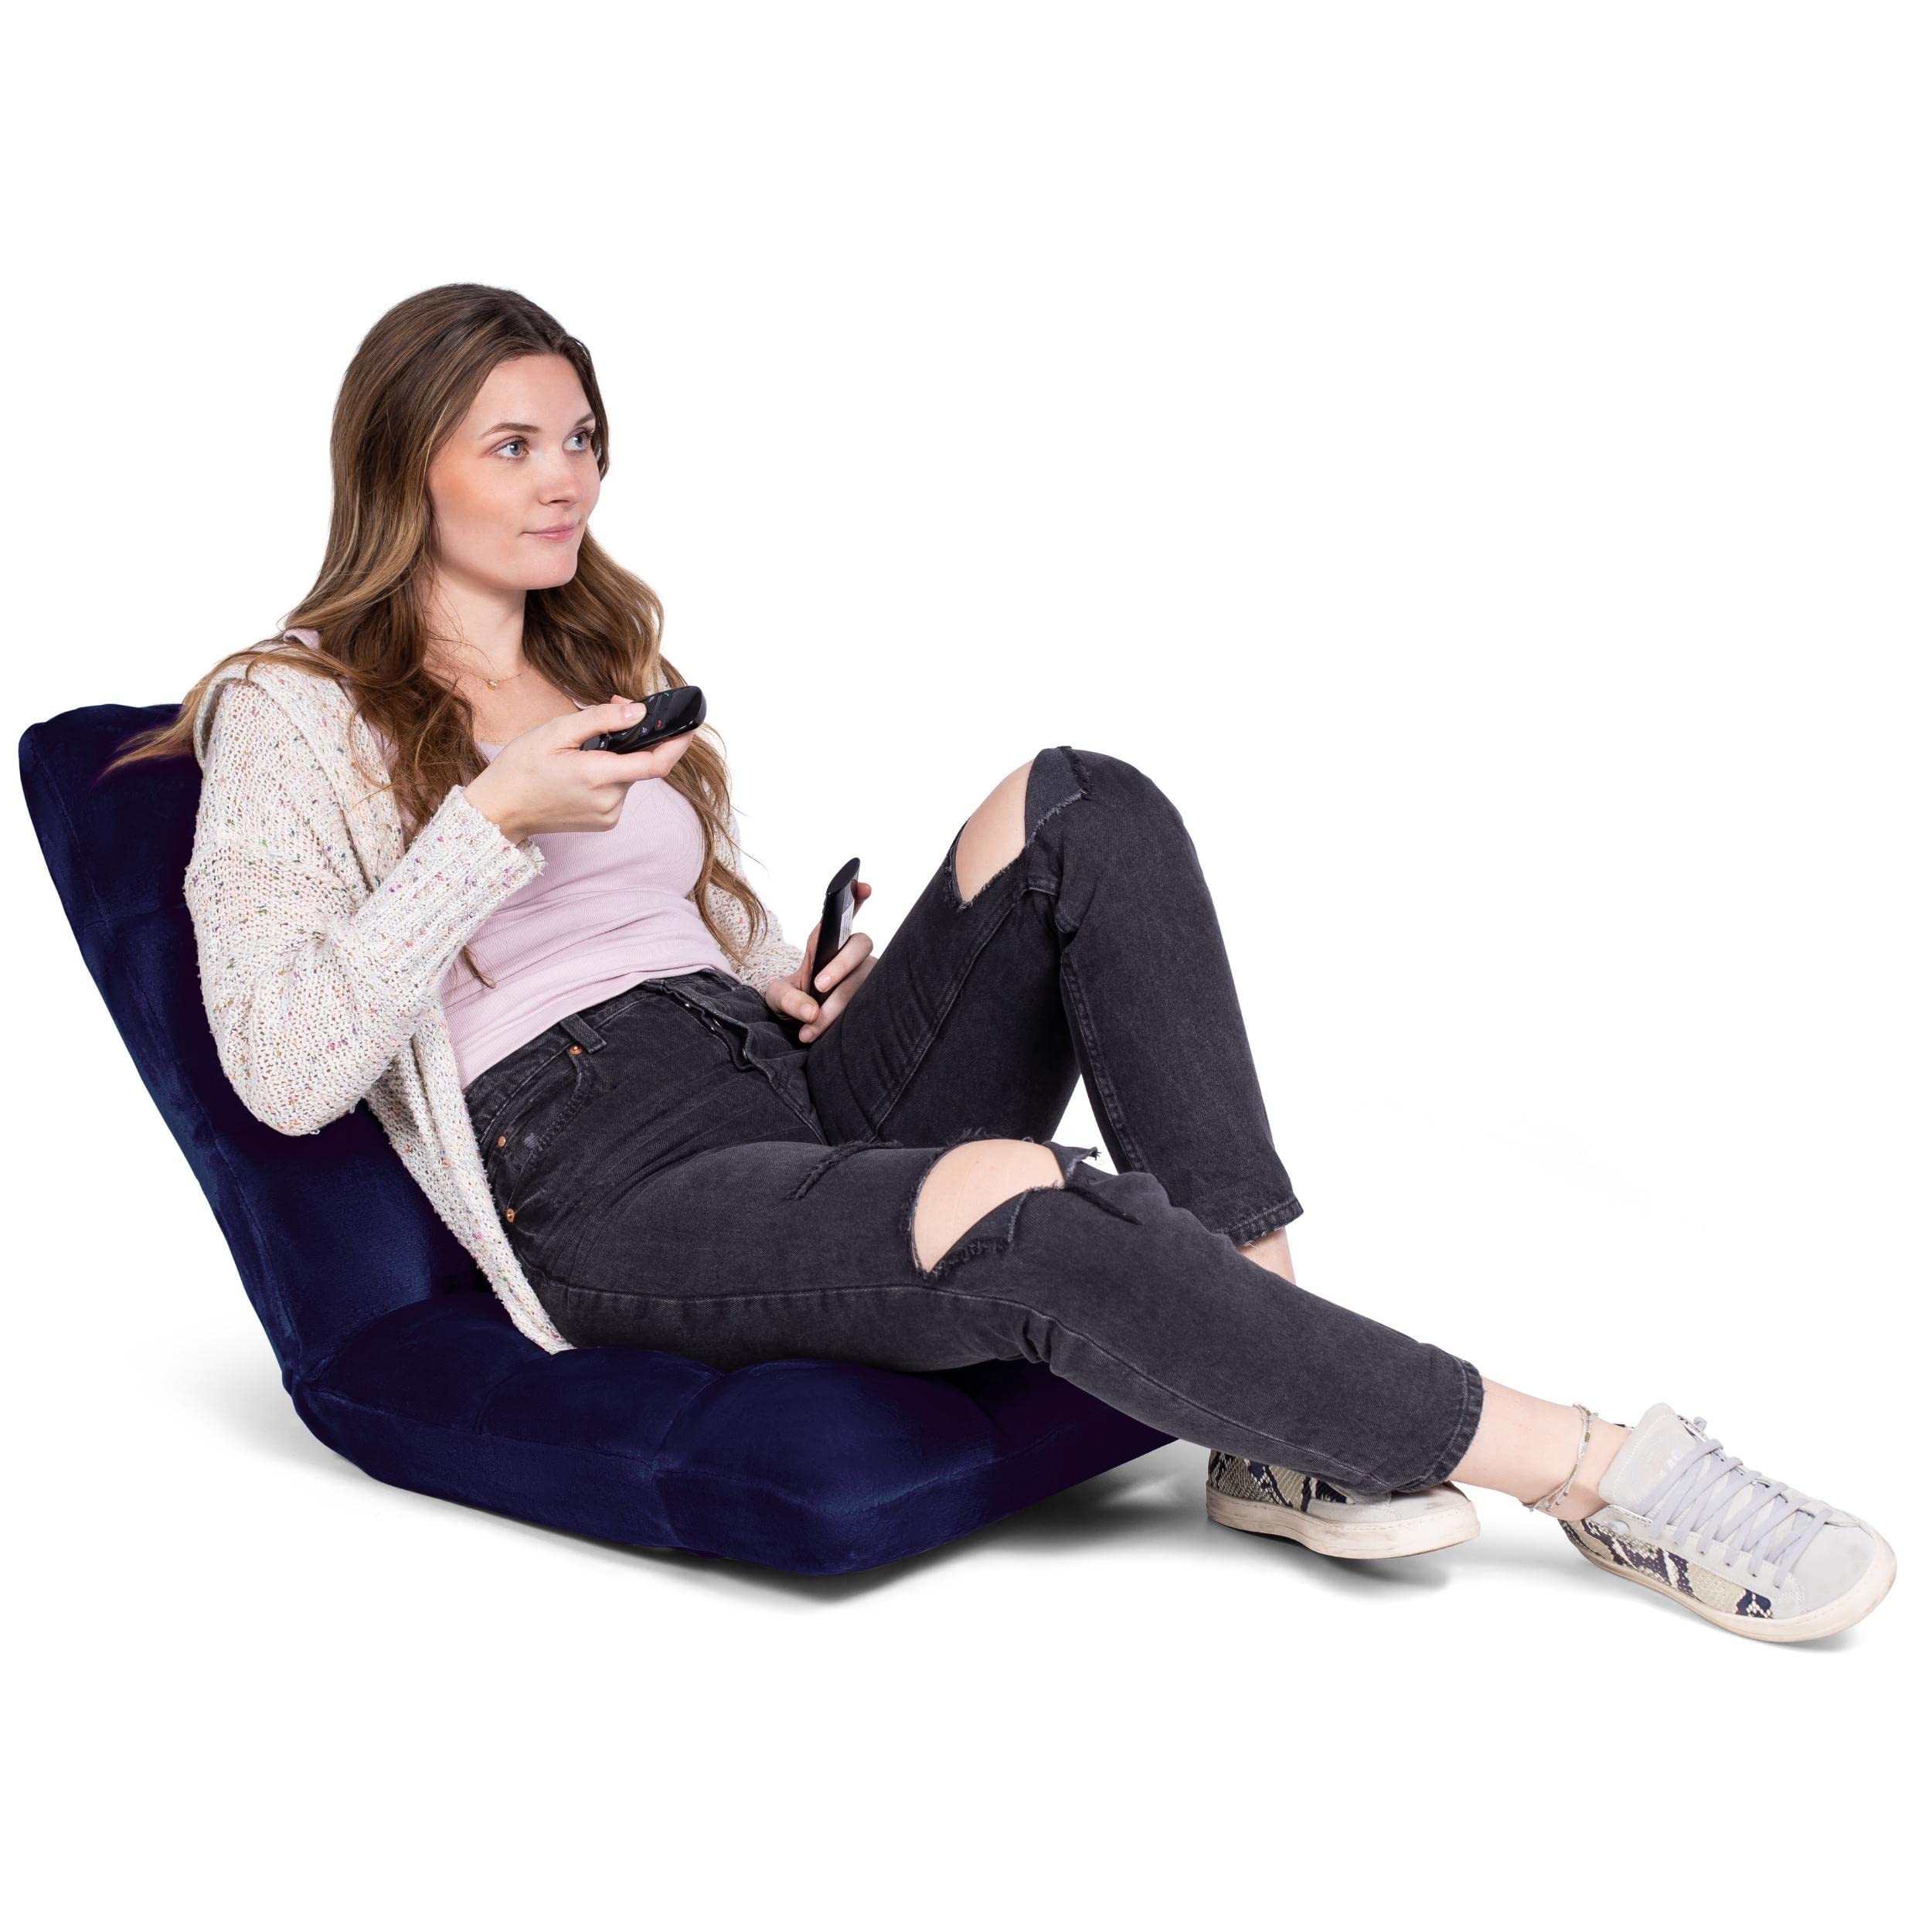 BIRDROCK HOME Adjustable 14-Position Memory Foam Floor Chair for Kids | 22.5